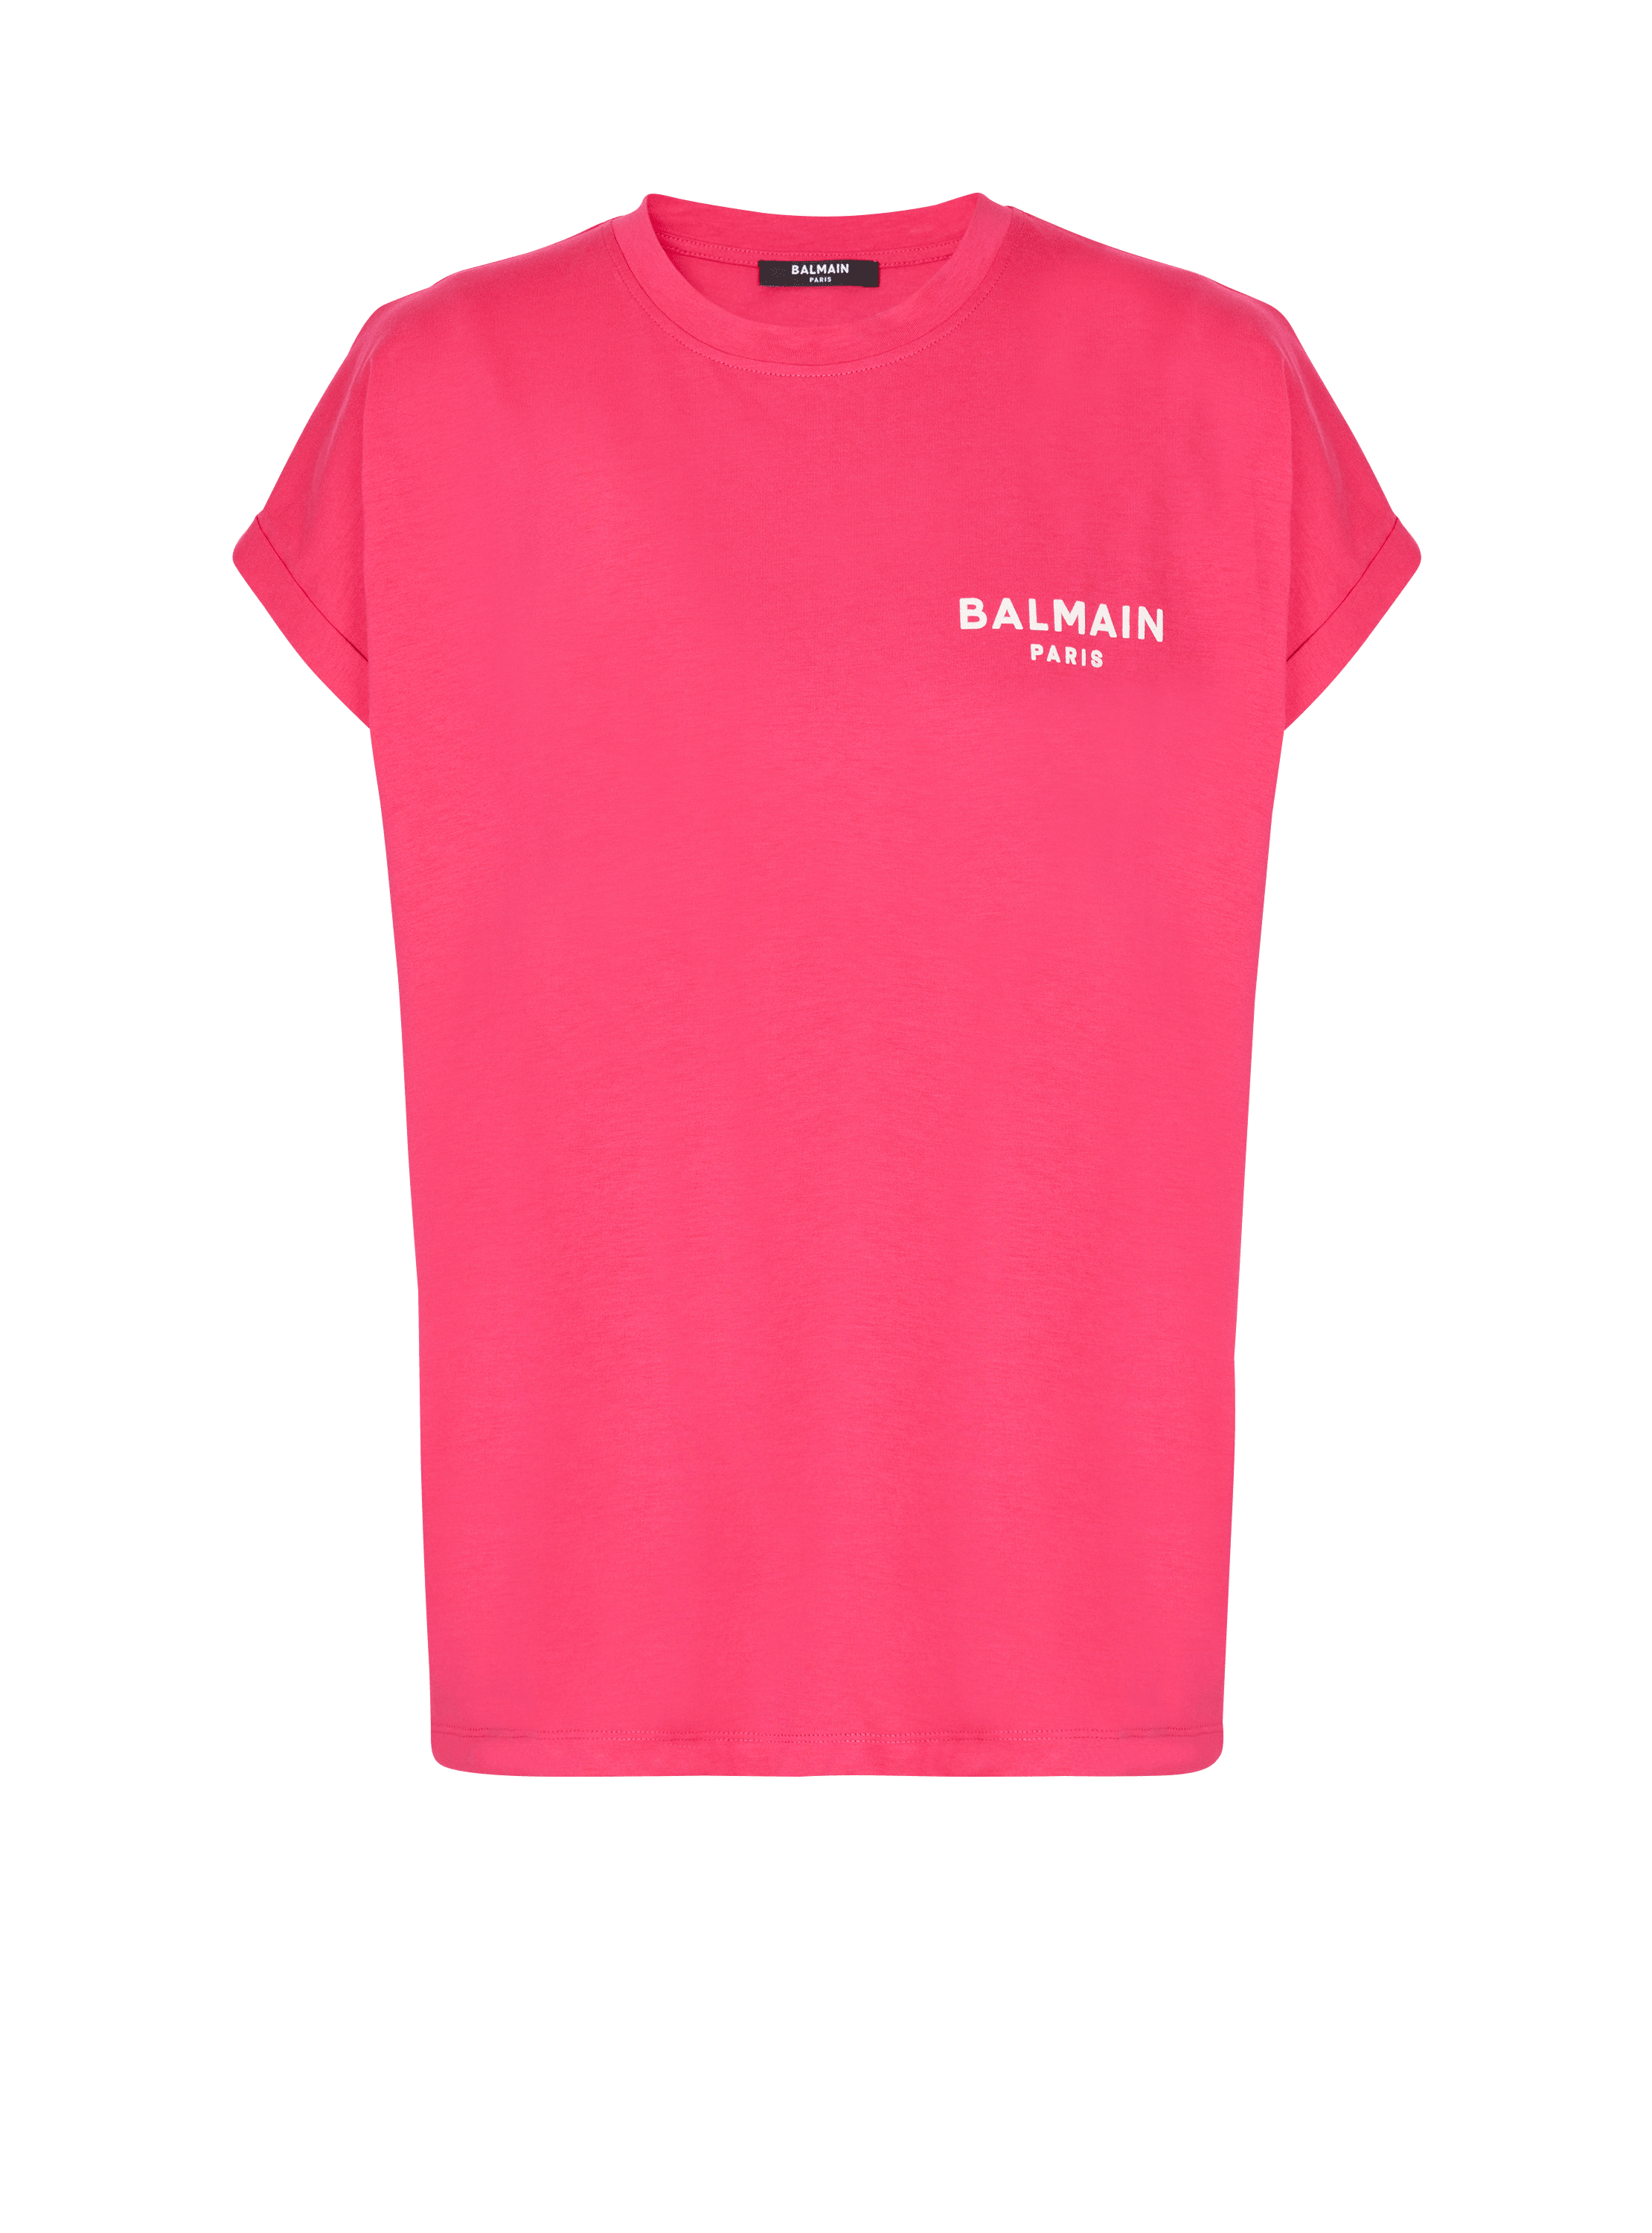 Camiseta con logotipo de Balmain serigrafiado